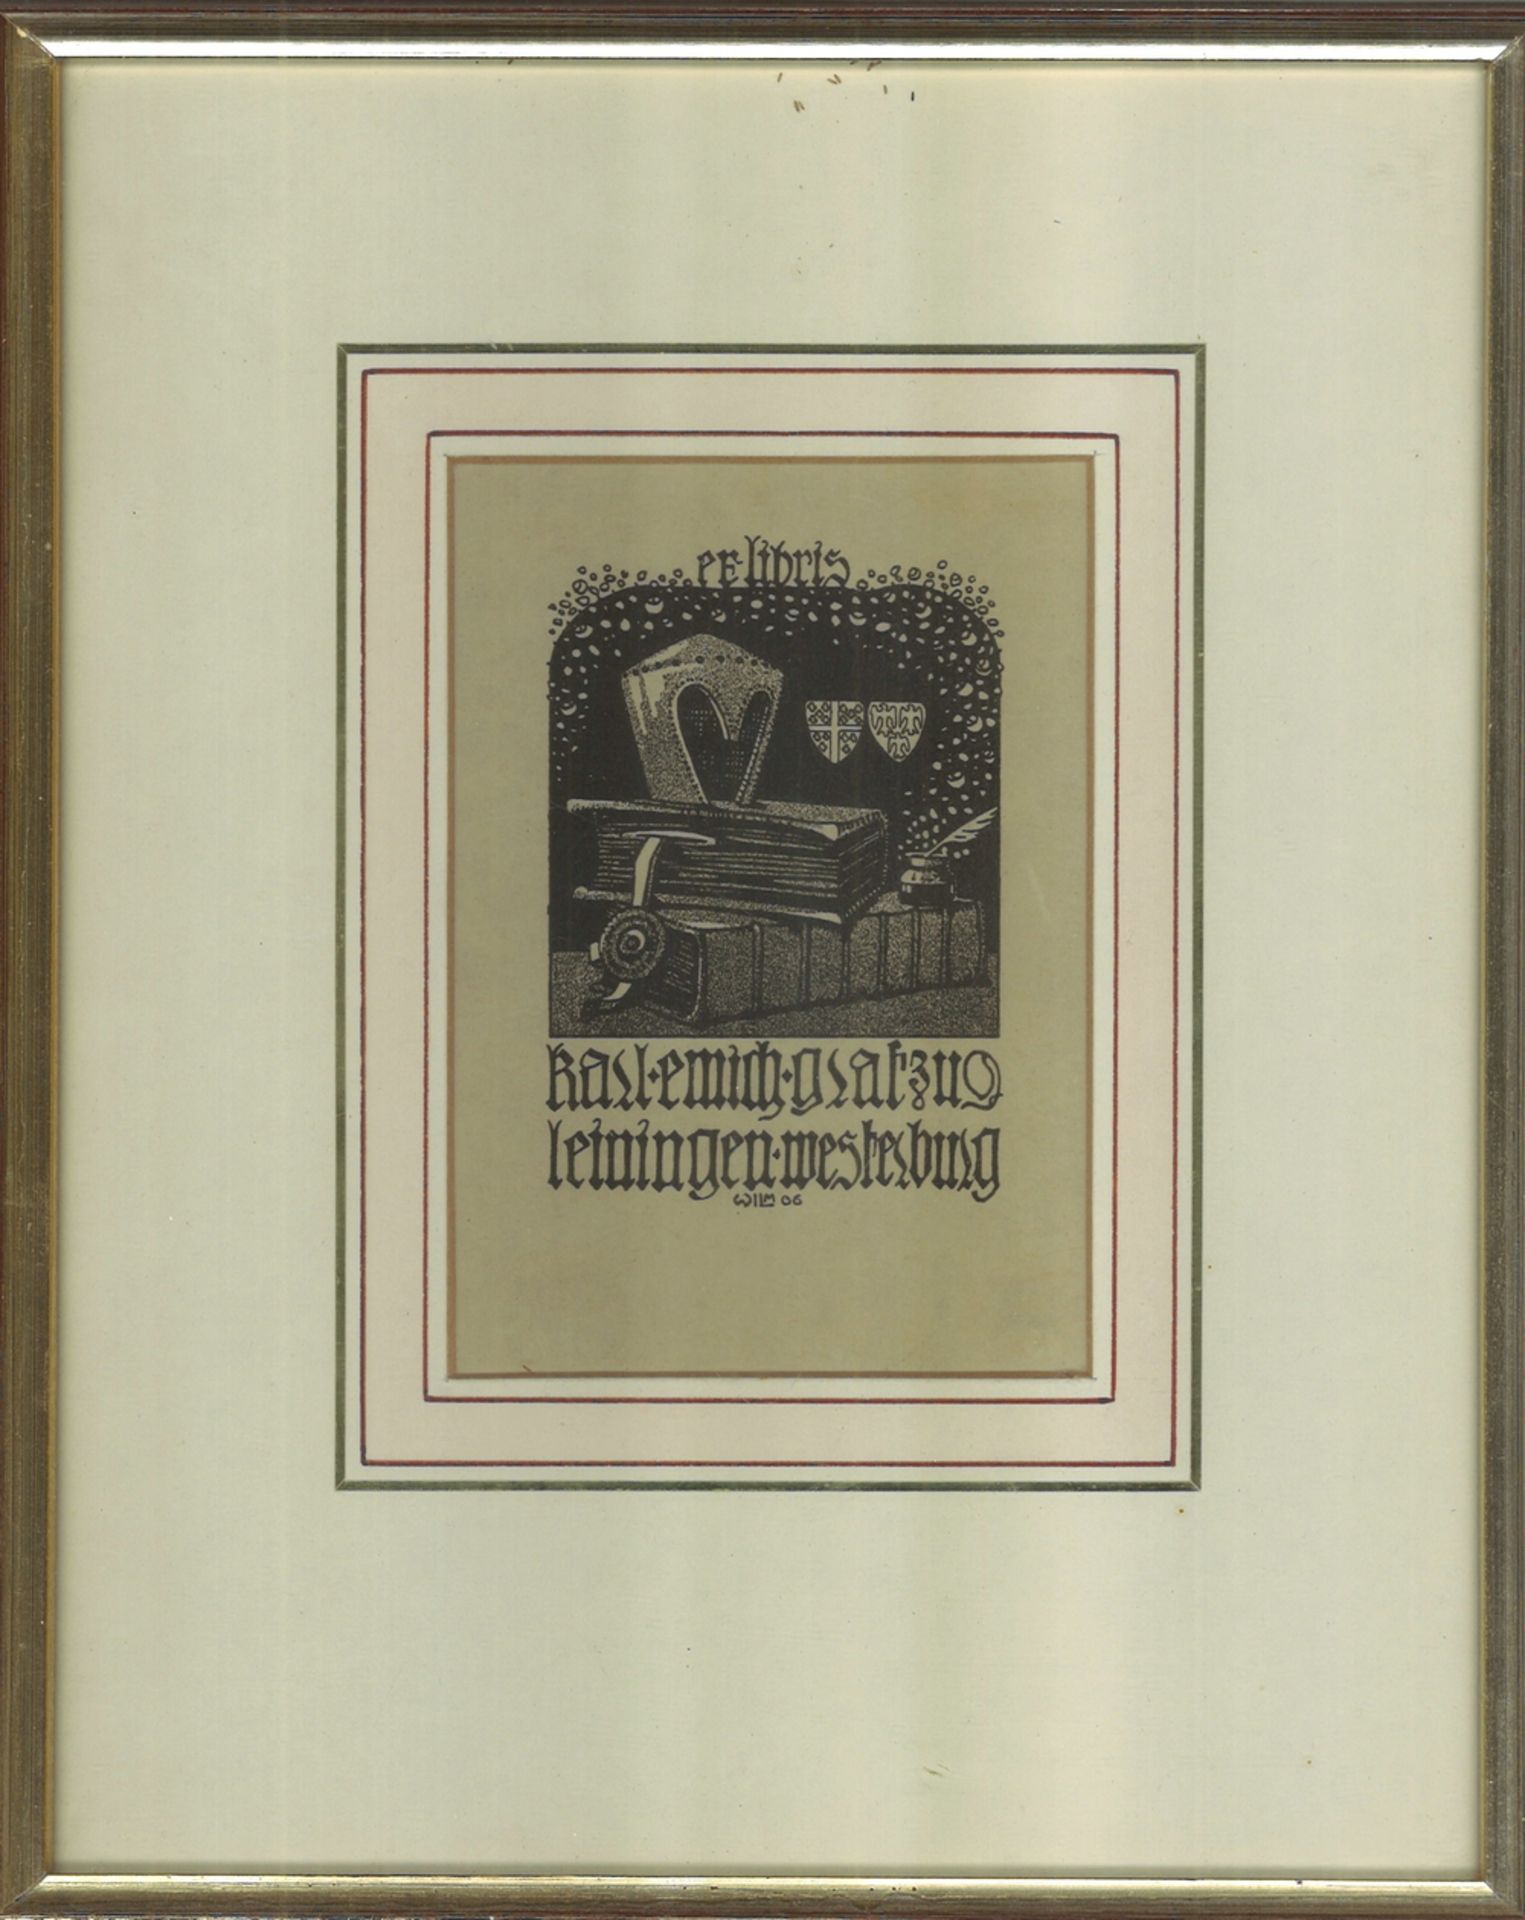 Exlibris d. Karl Emich, Graf zu Leiningen - Westerburg, Wilm 1906, hinter Glas gerahmt.